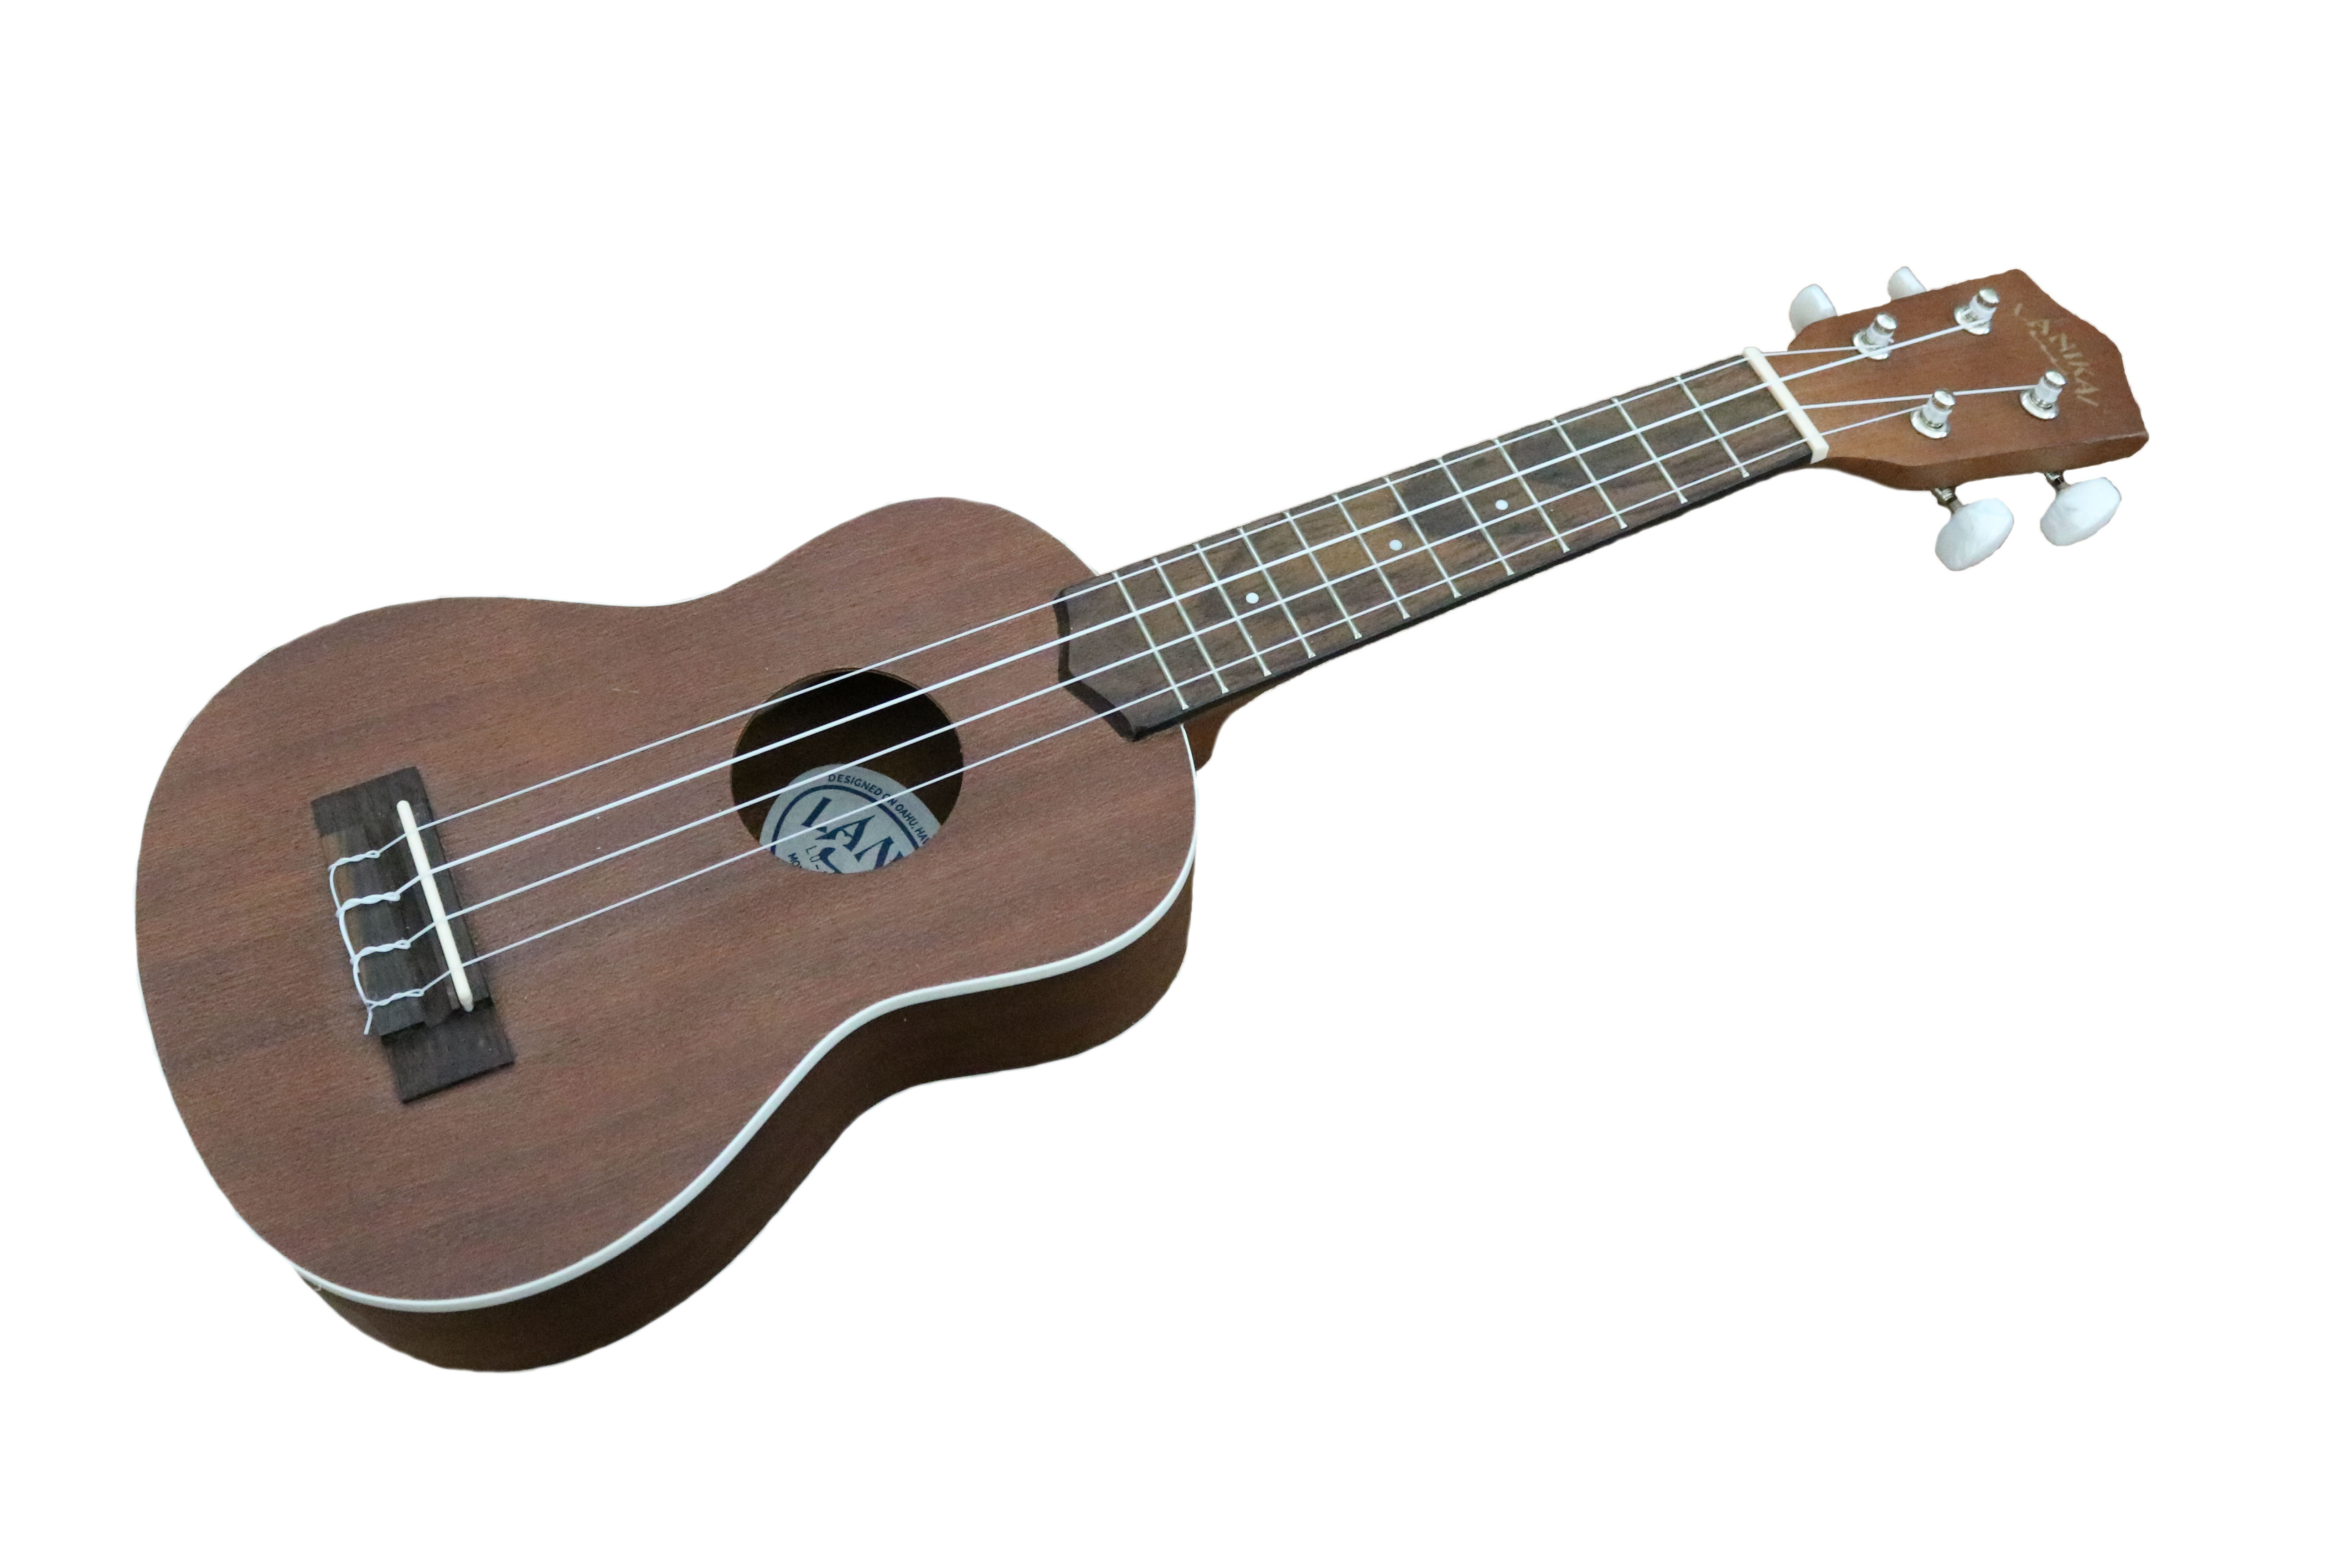 Photo of a ukulele